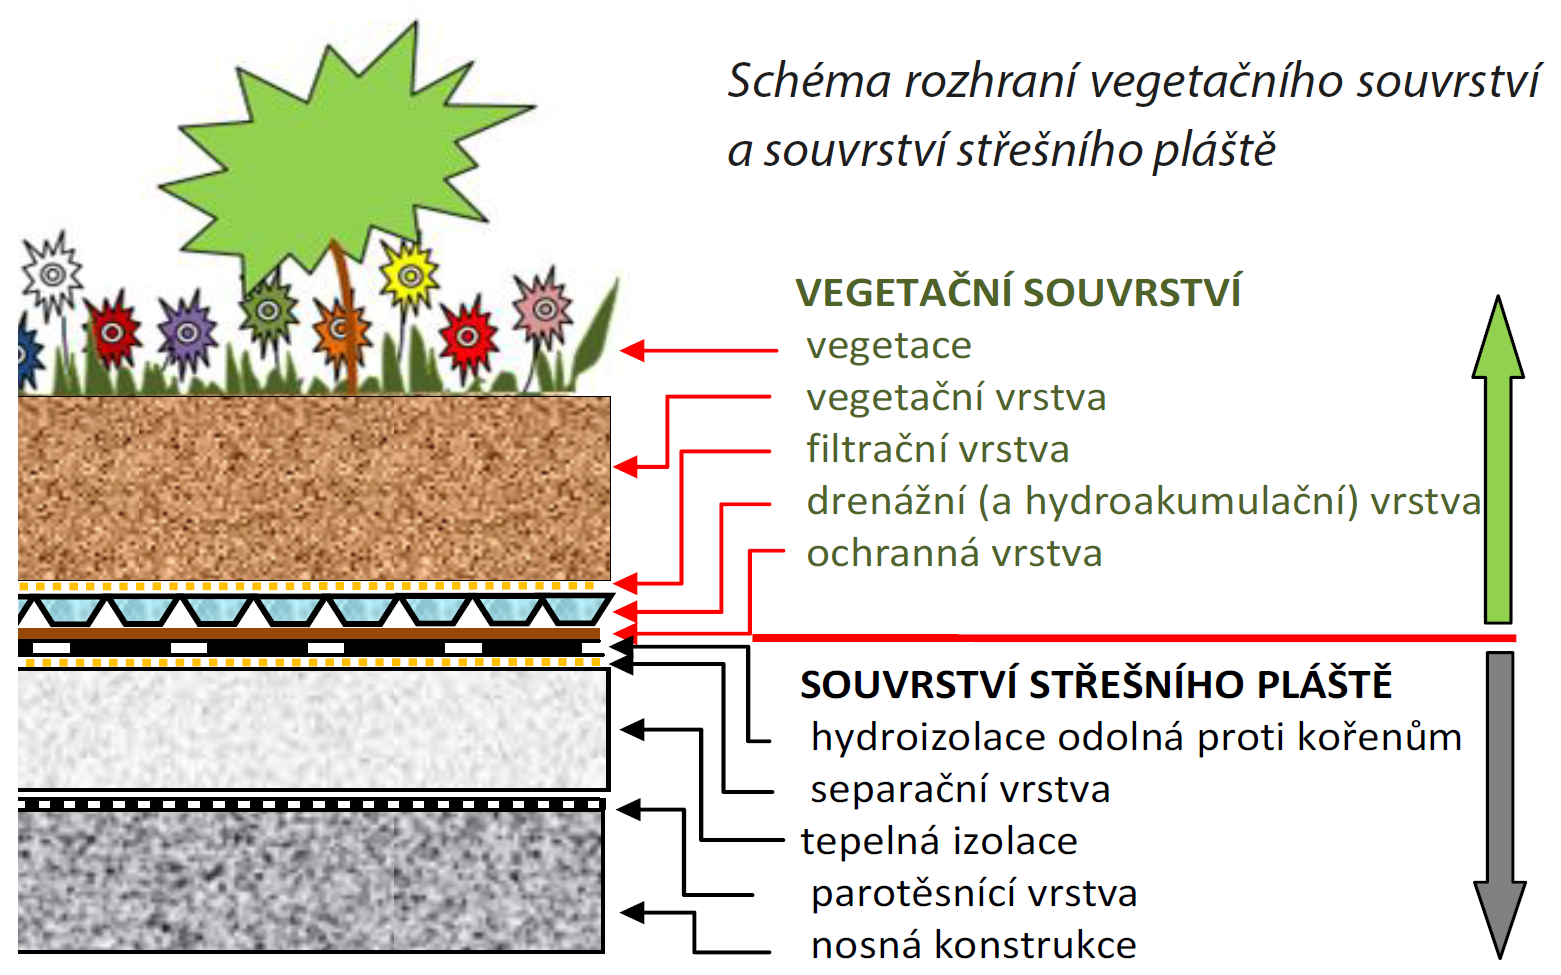 Vegetační souvrství je vše, co rostlinám slouží pro růst. V souvrství střešního pláště jsou rostliny nežádoucí, a proto musí být chráněno hydroizolací odolnou proti prorůstání kořínků.